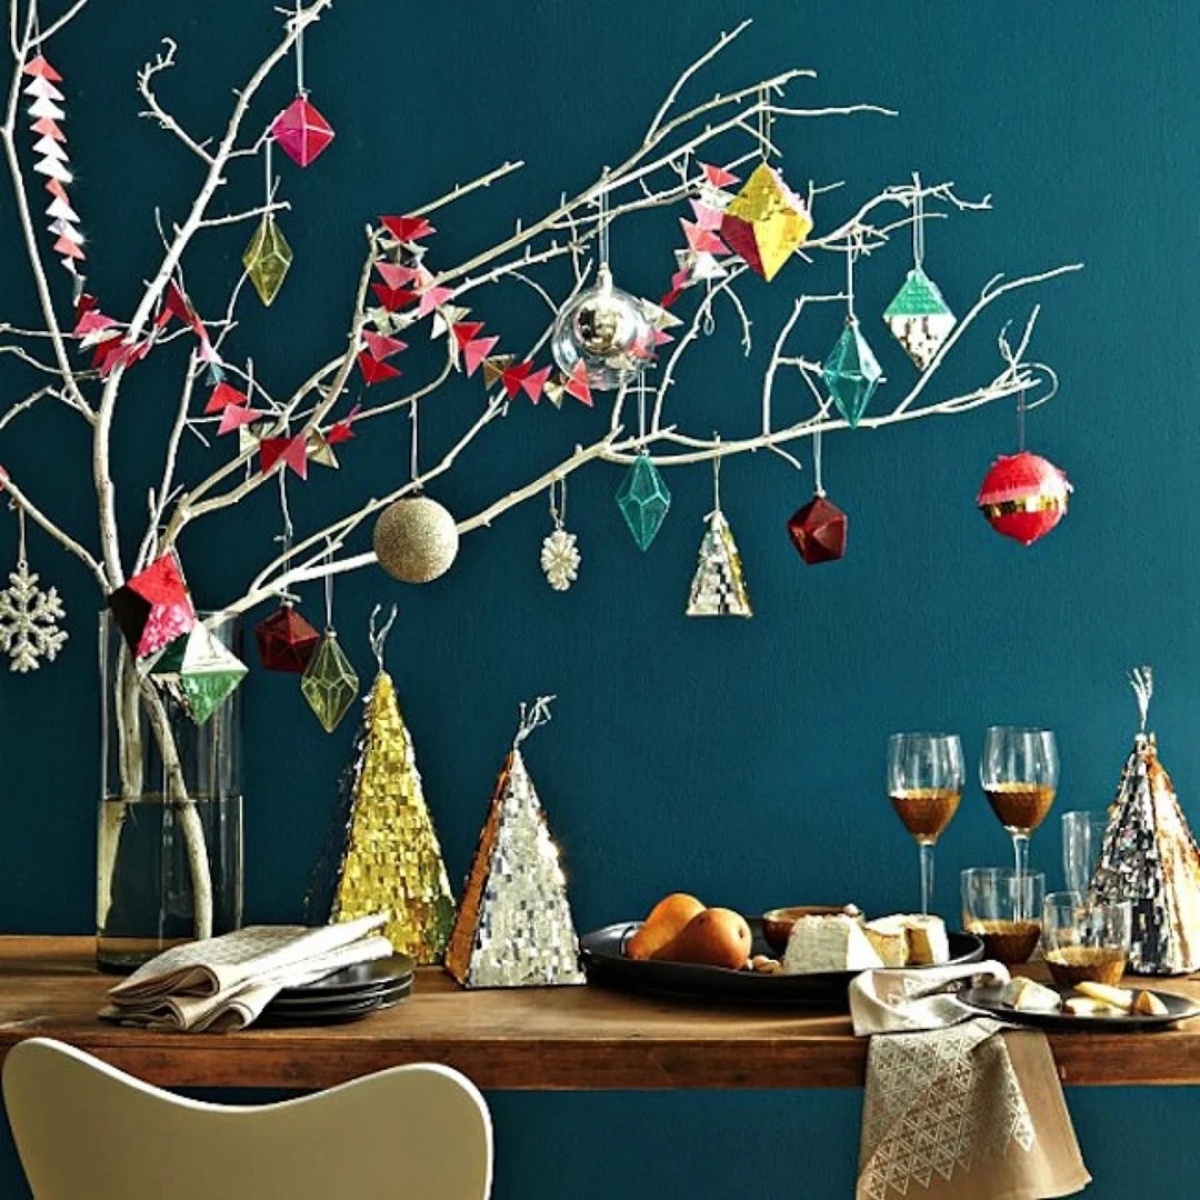 centrotavola natalizio decorazioni con rami secchi